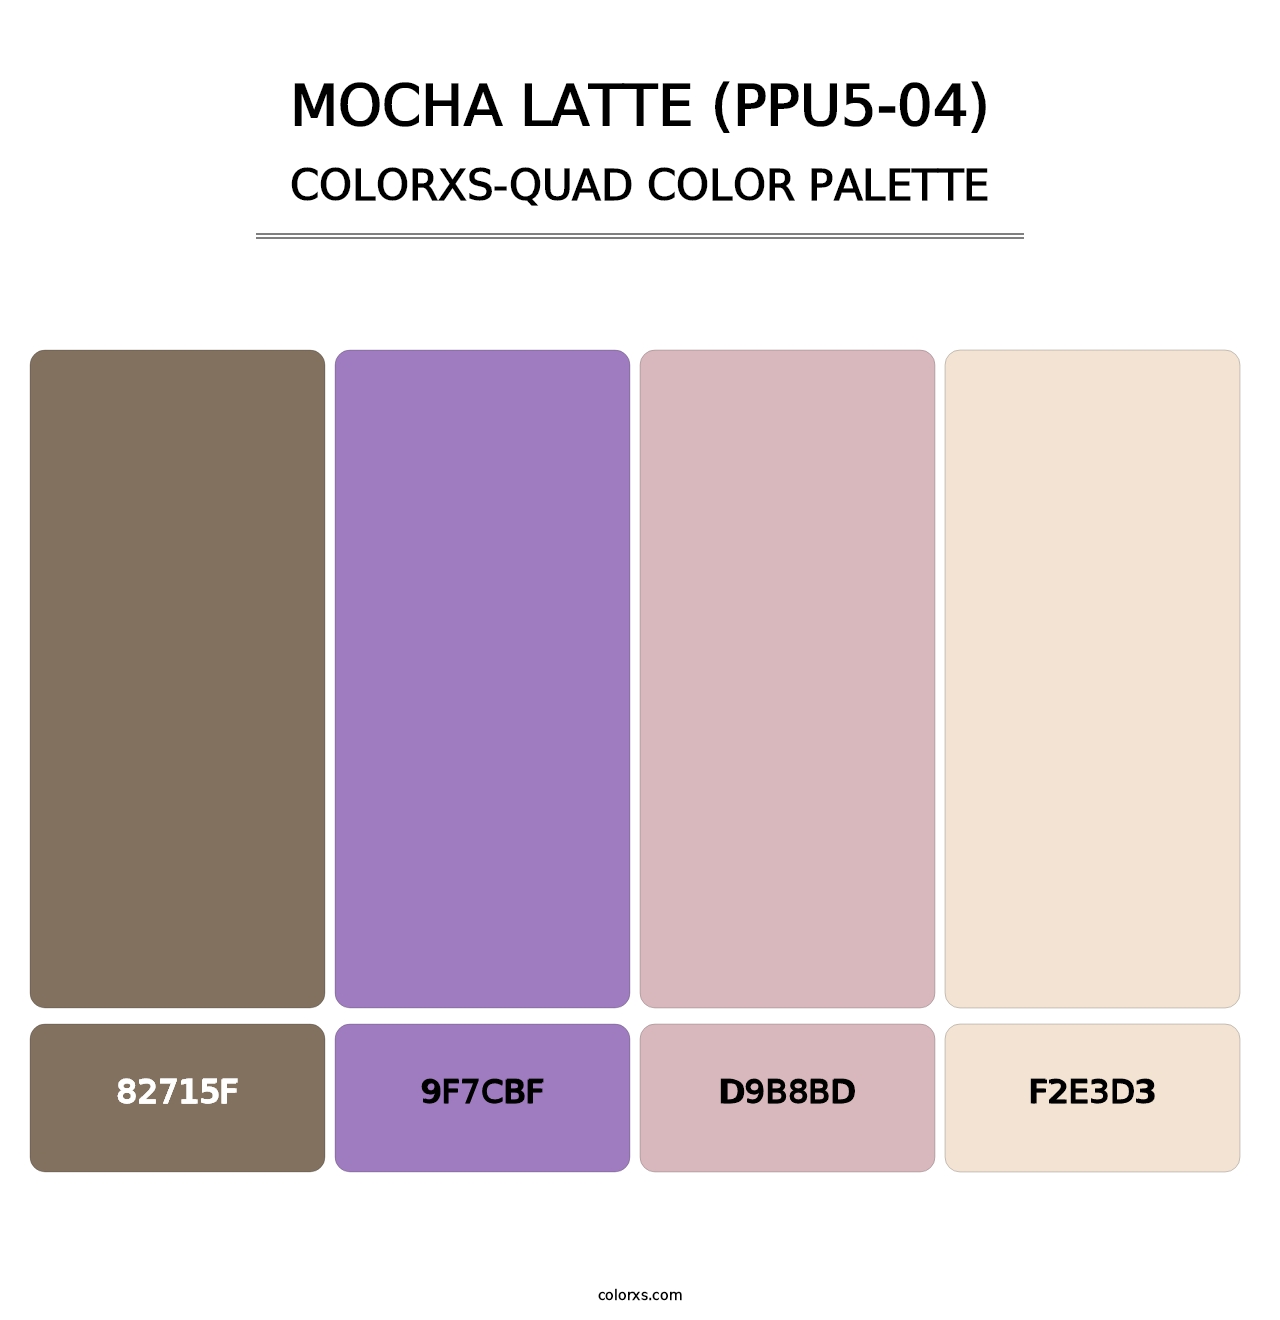 Mocha Latte (PPU5-04) - Colorxs Quad Palette